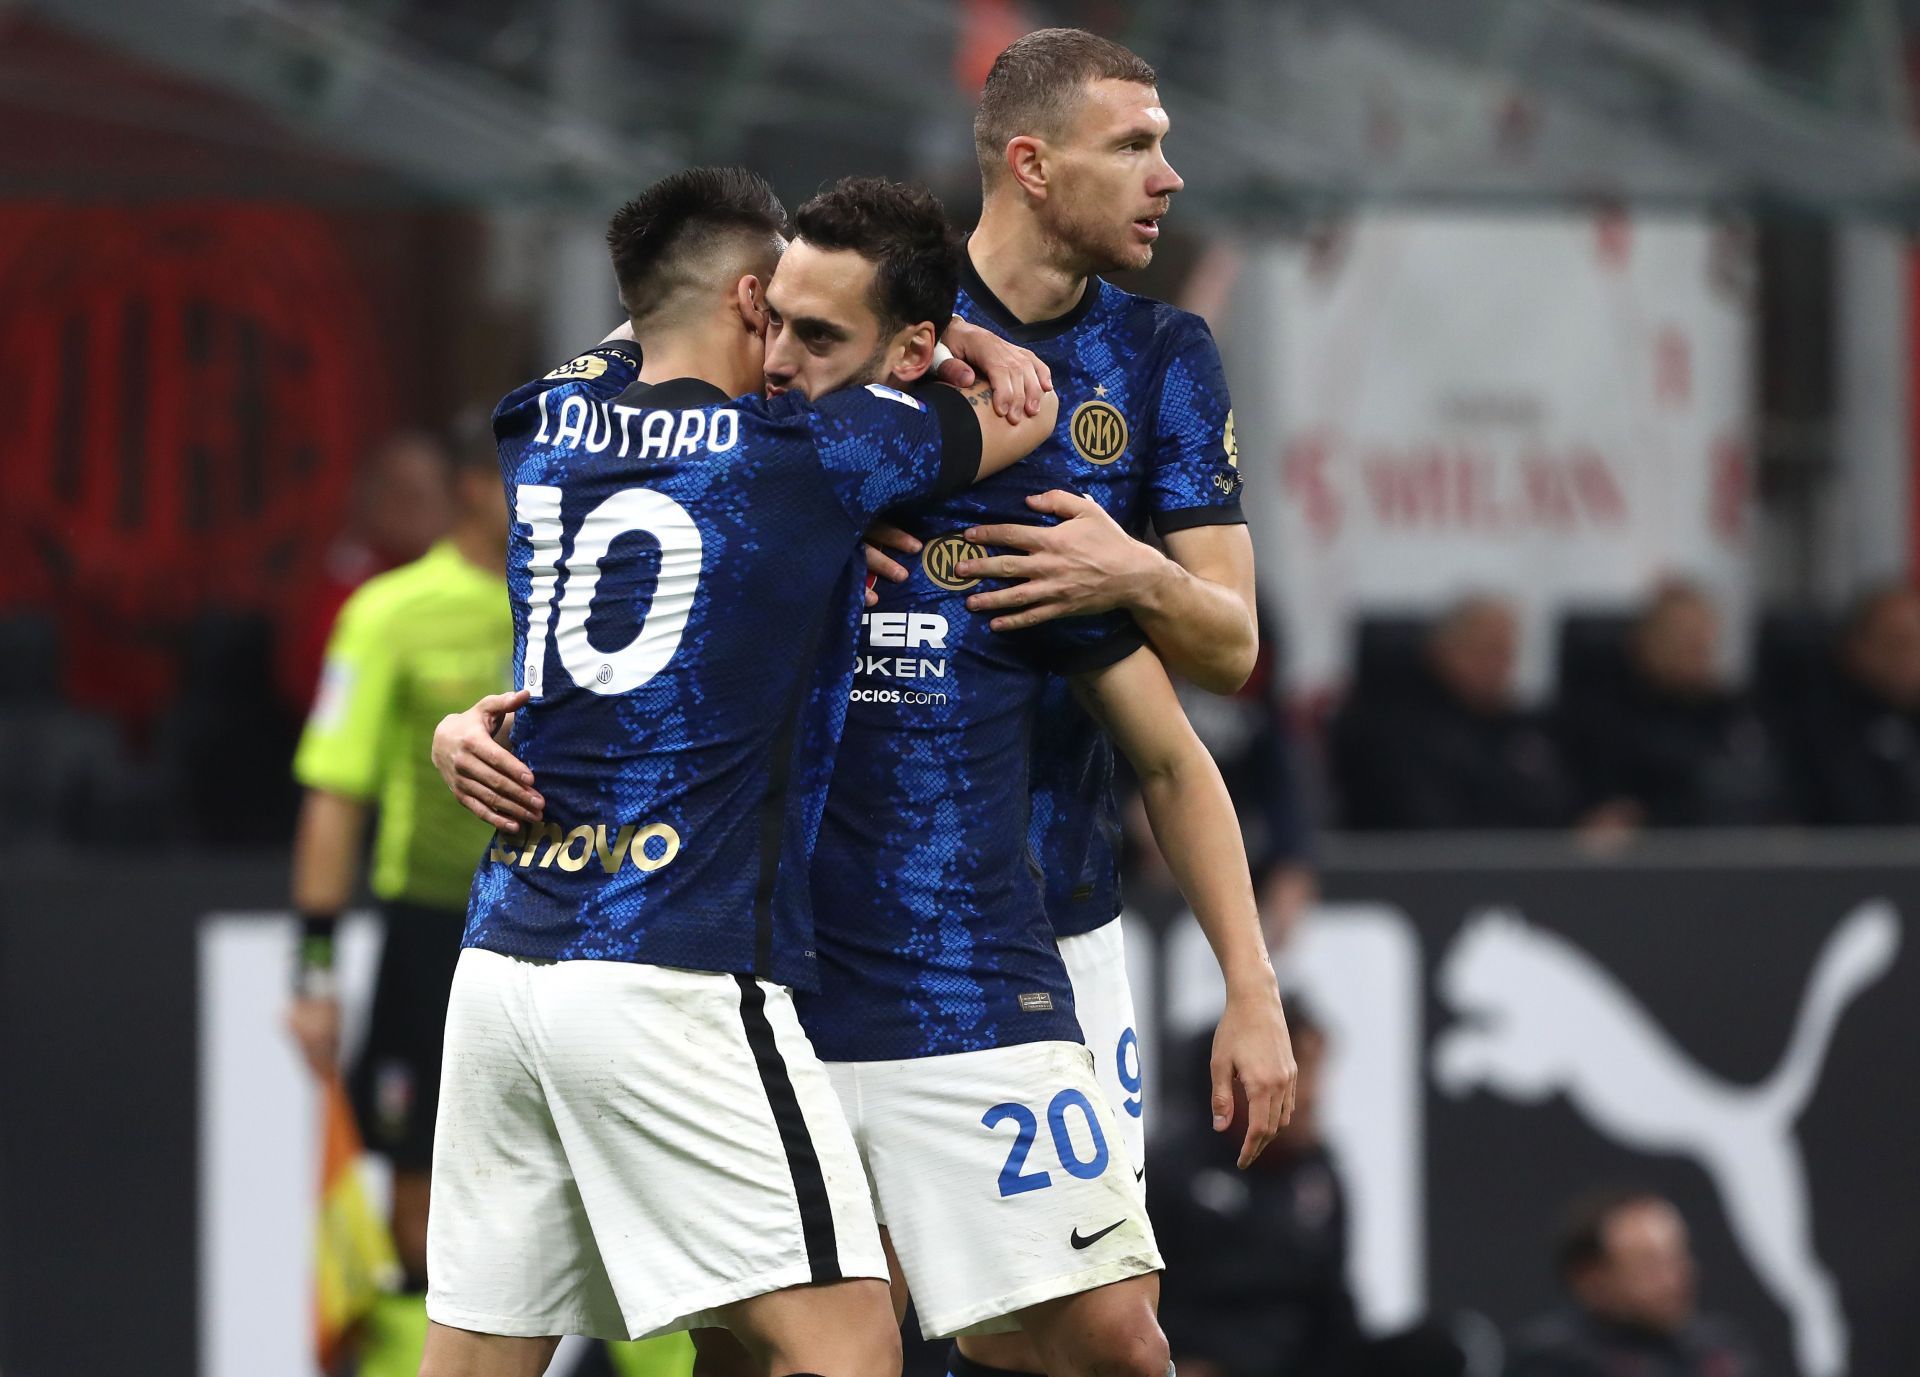 Inter Milan play Napoli on Sunday